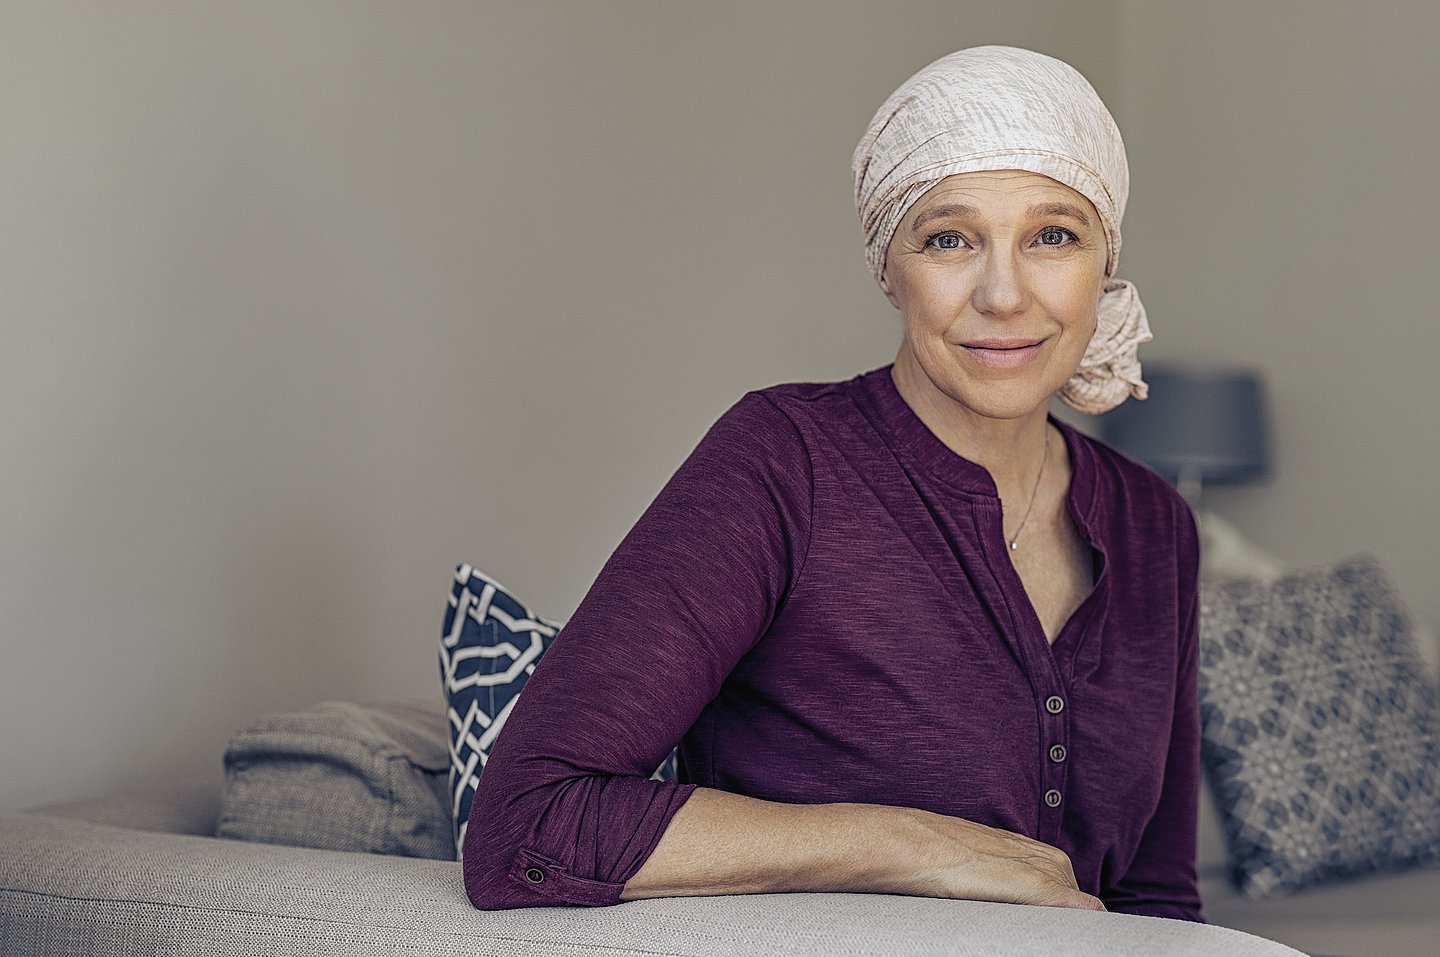 Foto einer Frau auf dem Sofa sitzend, die sich an der Rückenlehne abstützt, mit einem Kopftuch, das sie offensichtlich nach einer Chemotherapie tragen muss